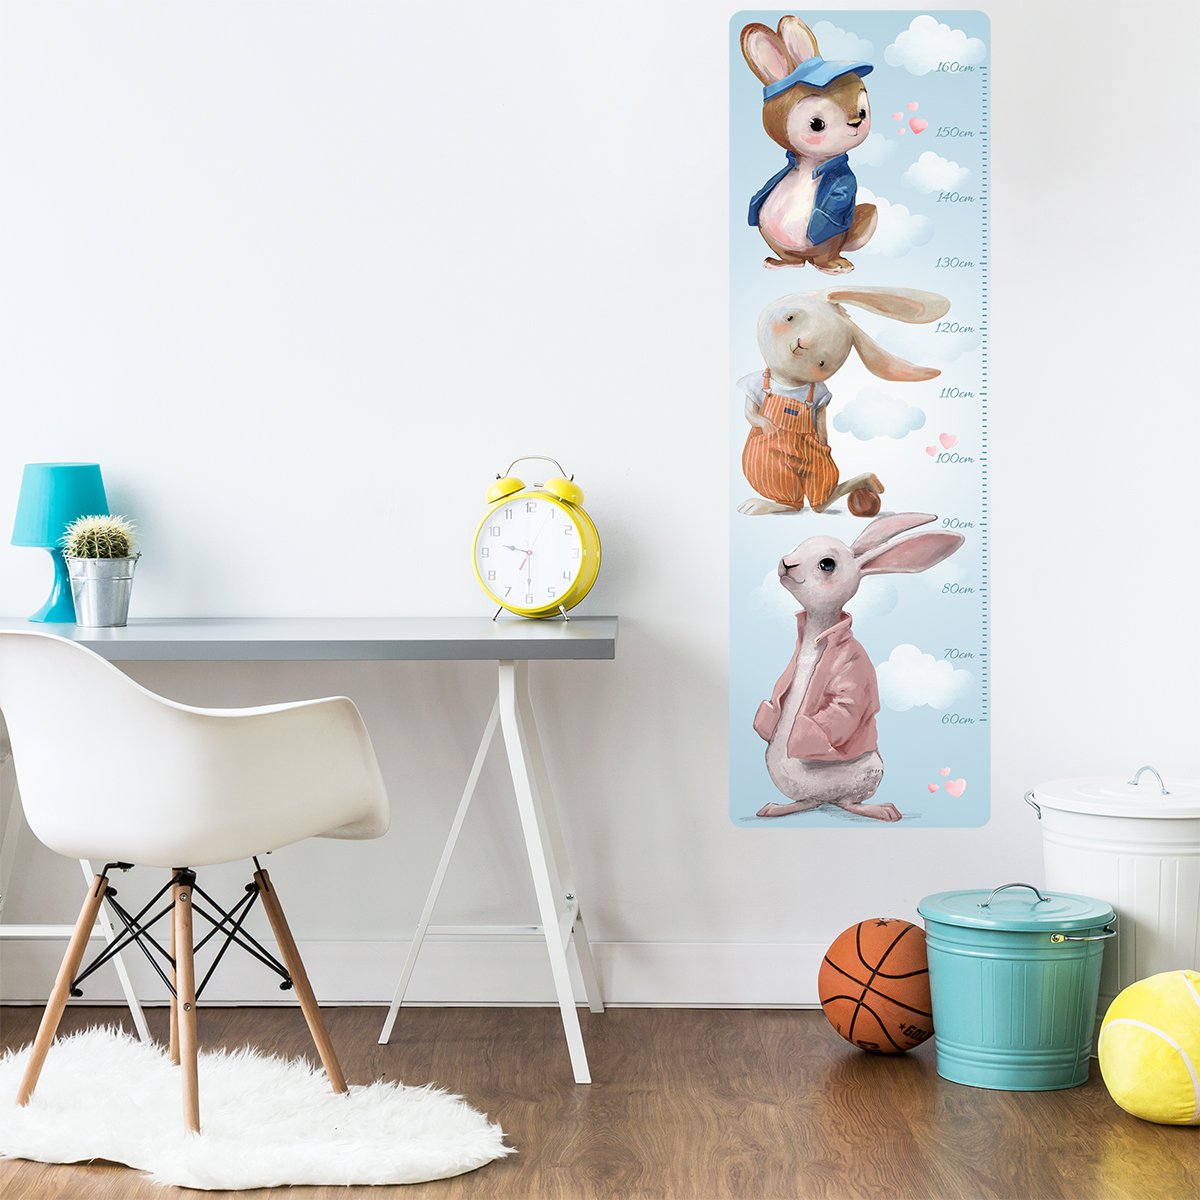 Kolorowa naklejka na ścianę miarka wzrostu dla chłopca trzy króliki